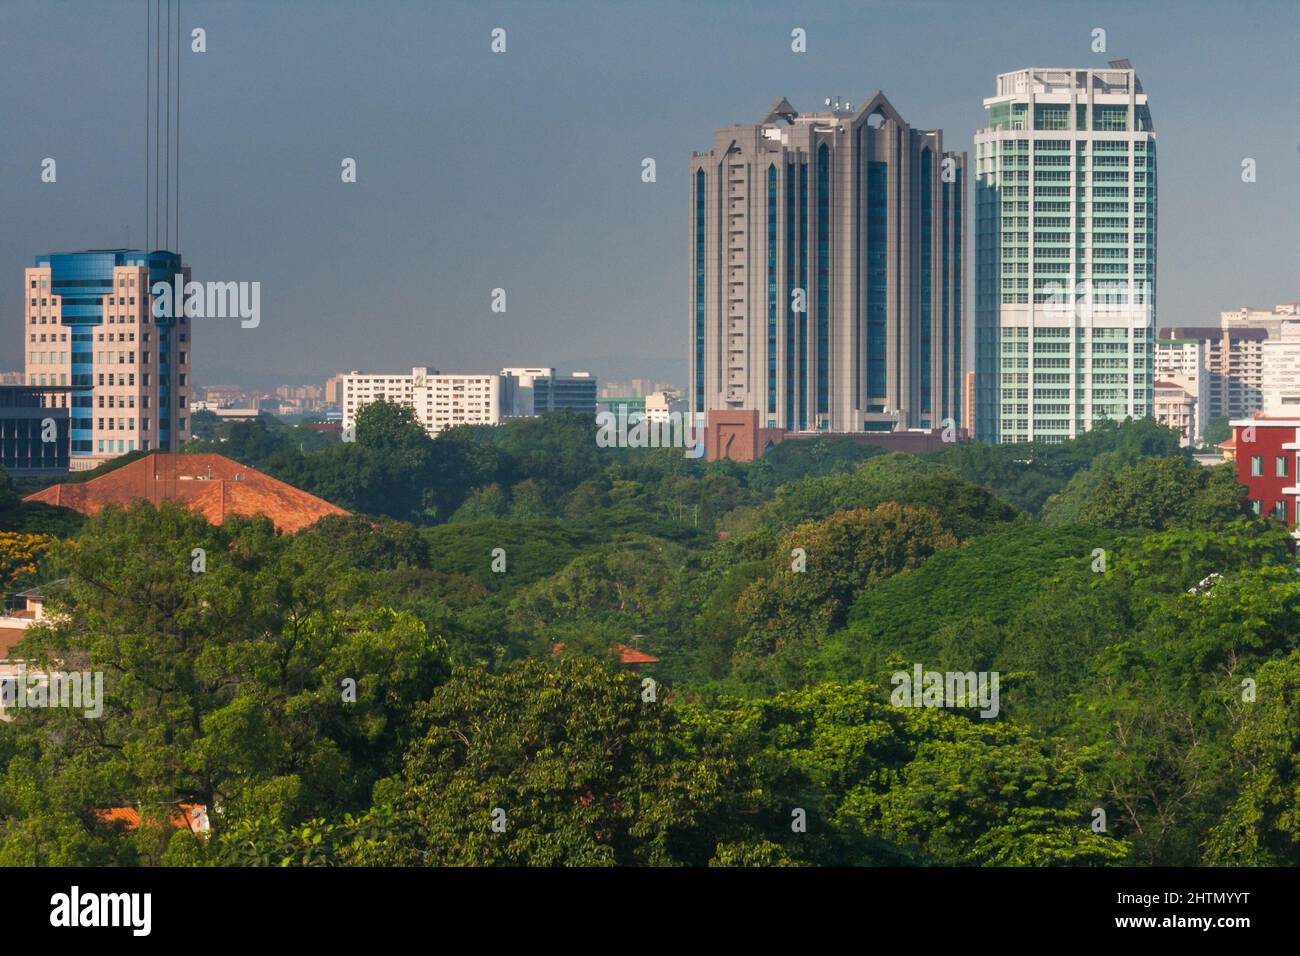 Immeubles résidentiels et d'appartements en hauteur au coeur du quartier central des affaires de KLCC, Bukit Bintang, Kuala Lumpur, Malaisie Banque D'Images